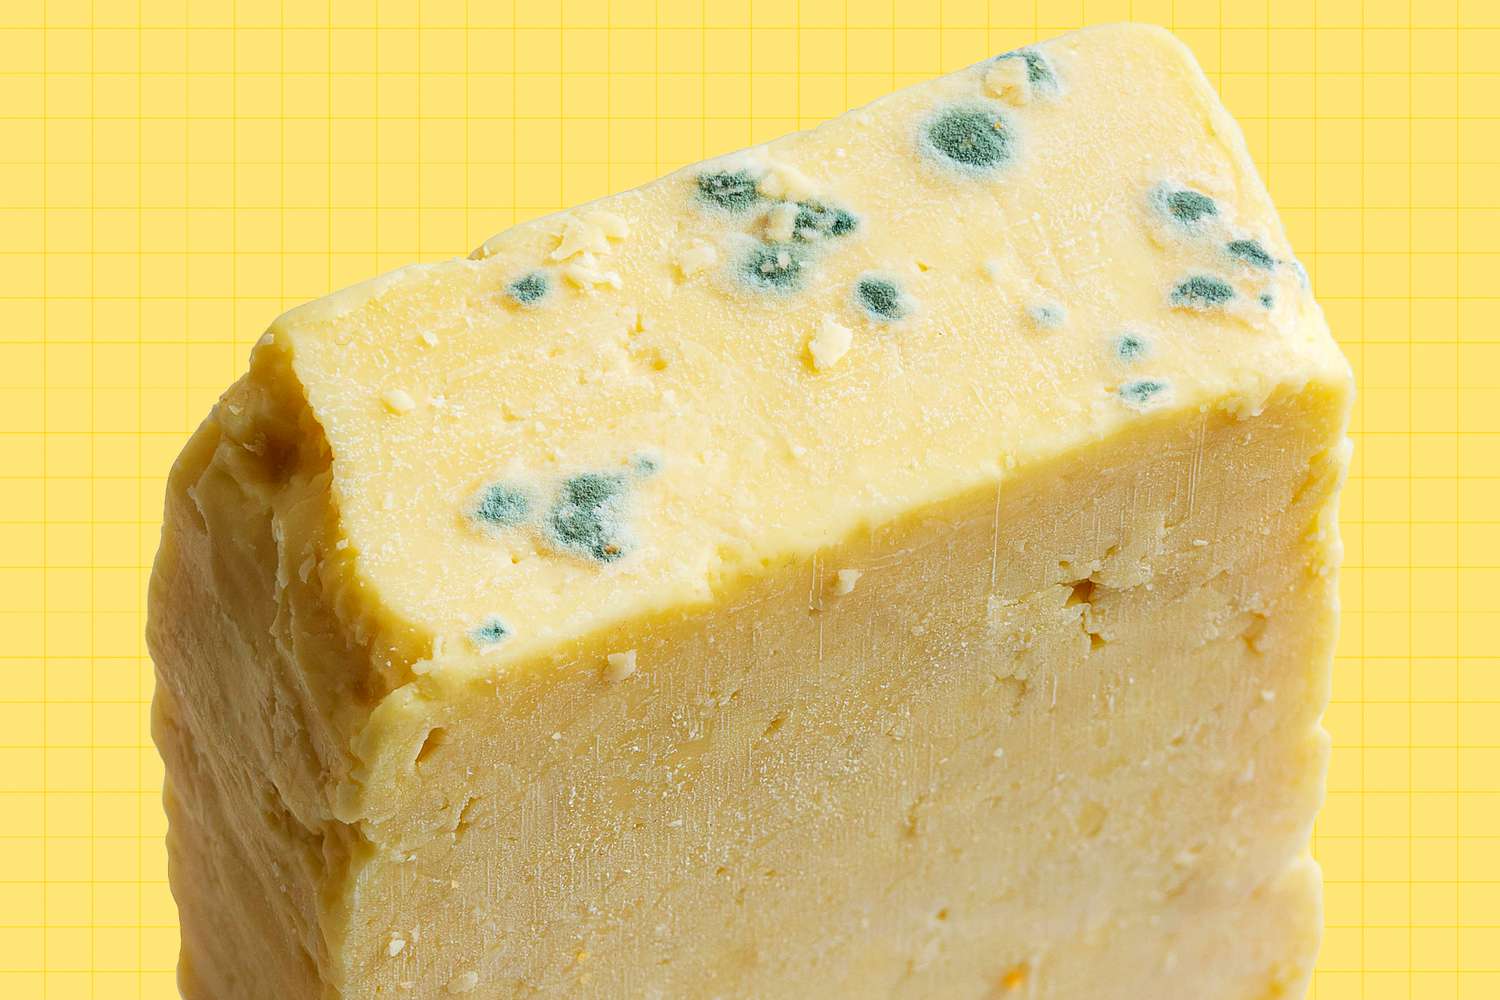 Bloques de queso con moho en el fondo del diseño, primero evalúe el estado del moho para cada tipo de queso. Es probable que el queso suave fresco, como la ricota, la mascarpone y la compartir, tengan moho en el queso, pero no es tóxico, pero debería simplemente descartarse porque tiene un efecto nady en el sabor.。El queso blando, como Brie y Porto Salute, se separa a aproximadamente un cuarto de pulgadas de la superficie donde se ve el moho. Un queso duro y envejecido, como el cheddar envejecido y el parmesano, solo puede eliminar el moho. Si el molde blanco con un blanco verdoso es pequeño, tendrá un pequeño efecto en el sabor y puede cortar el moho de forma segura sin accidentes. El moho negro y gris no es muy bueno, por lo que debe cortar más para eliminar el queso afectado. Deseche el queso mohoso, que tiene un olor a amoníaco, moho y humedad.